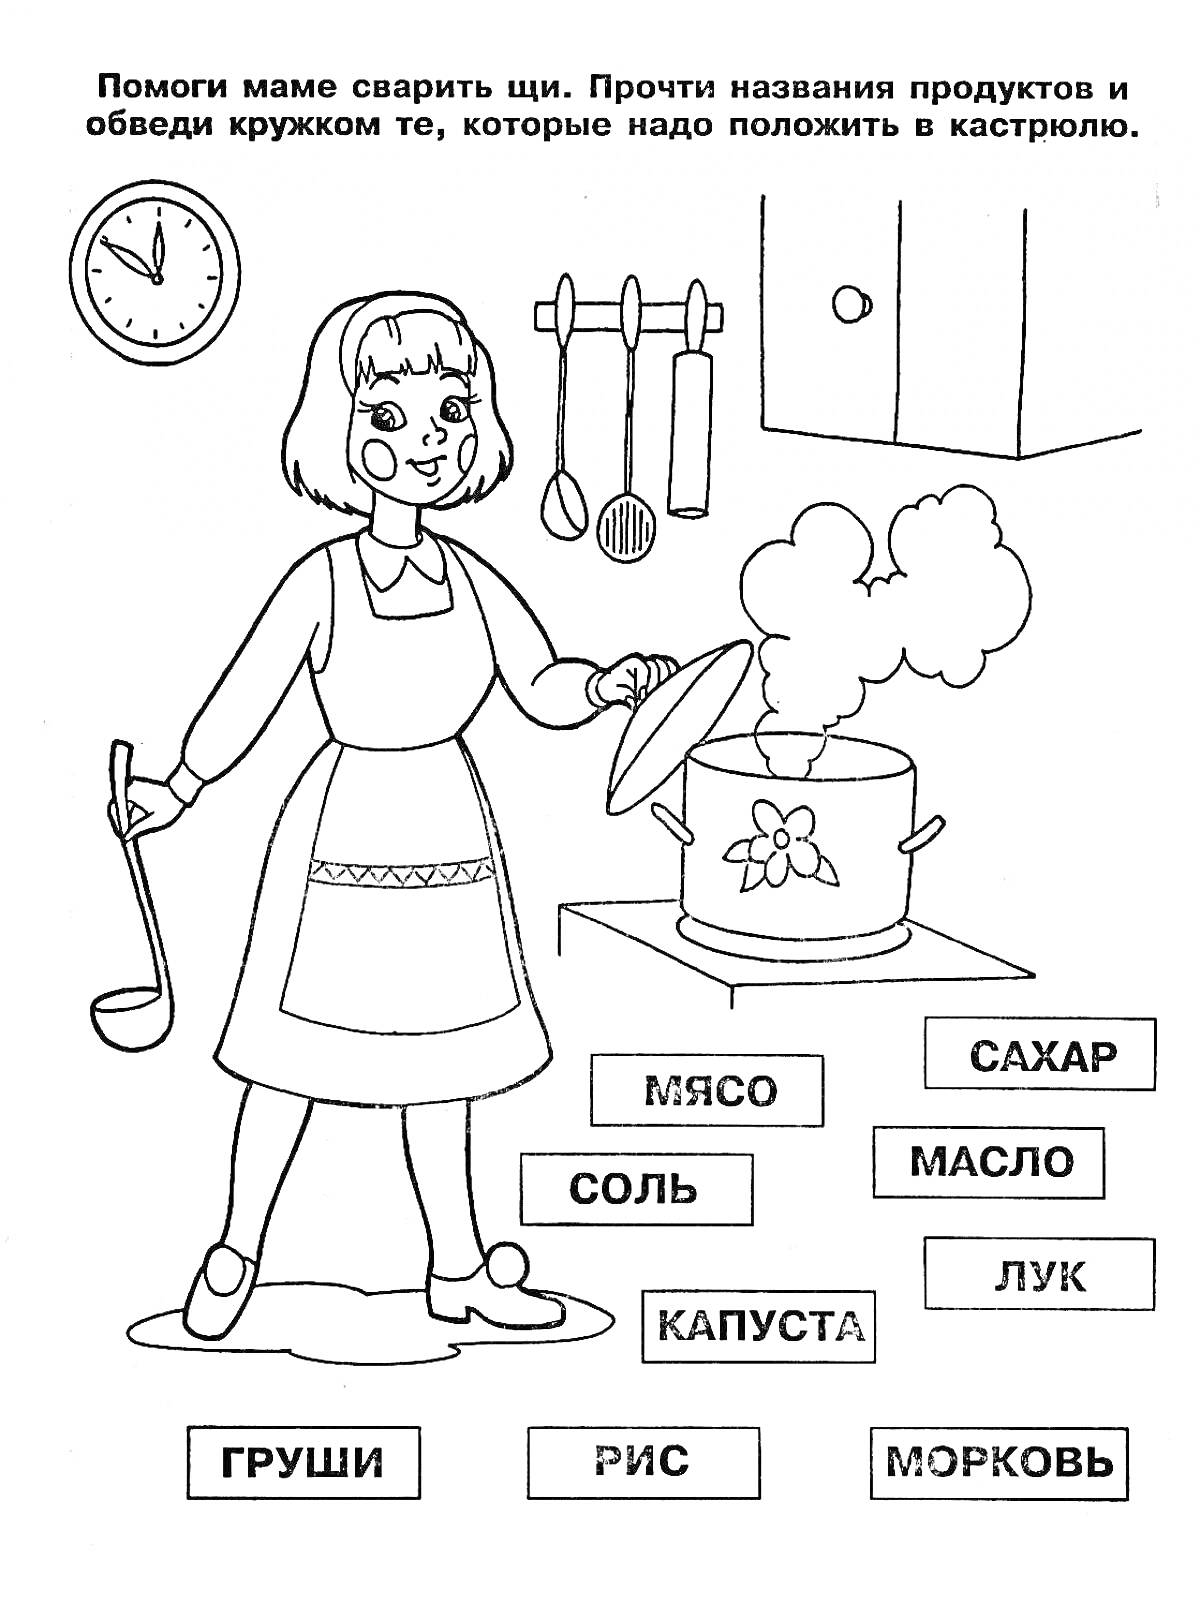 Девочка готовит щи, ингредиенты: мясо, капуста, лук, морковь, соль